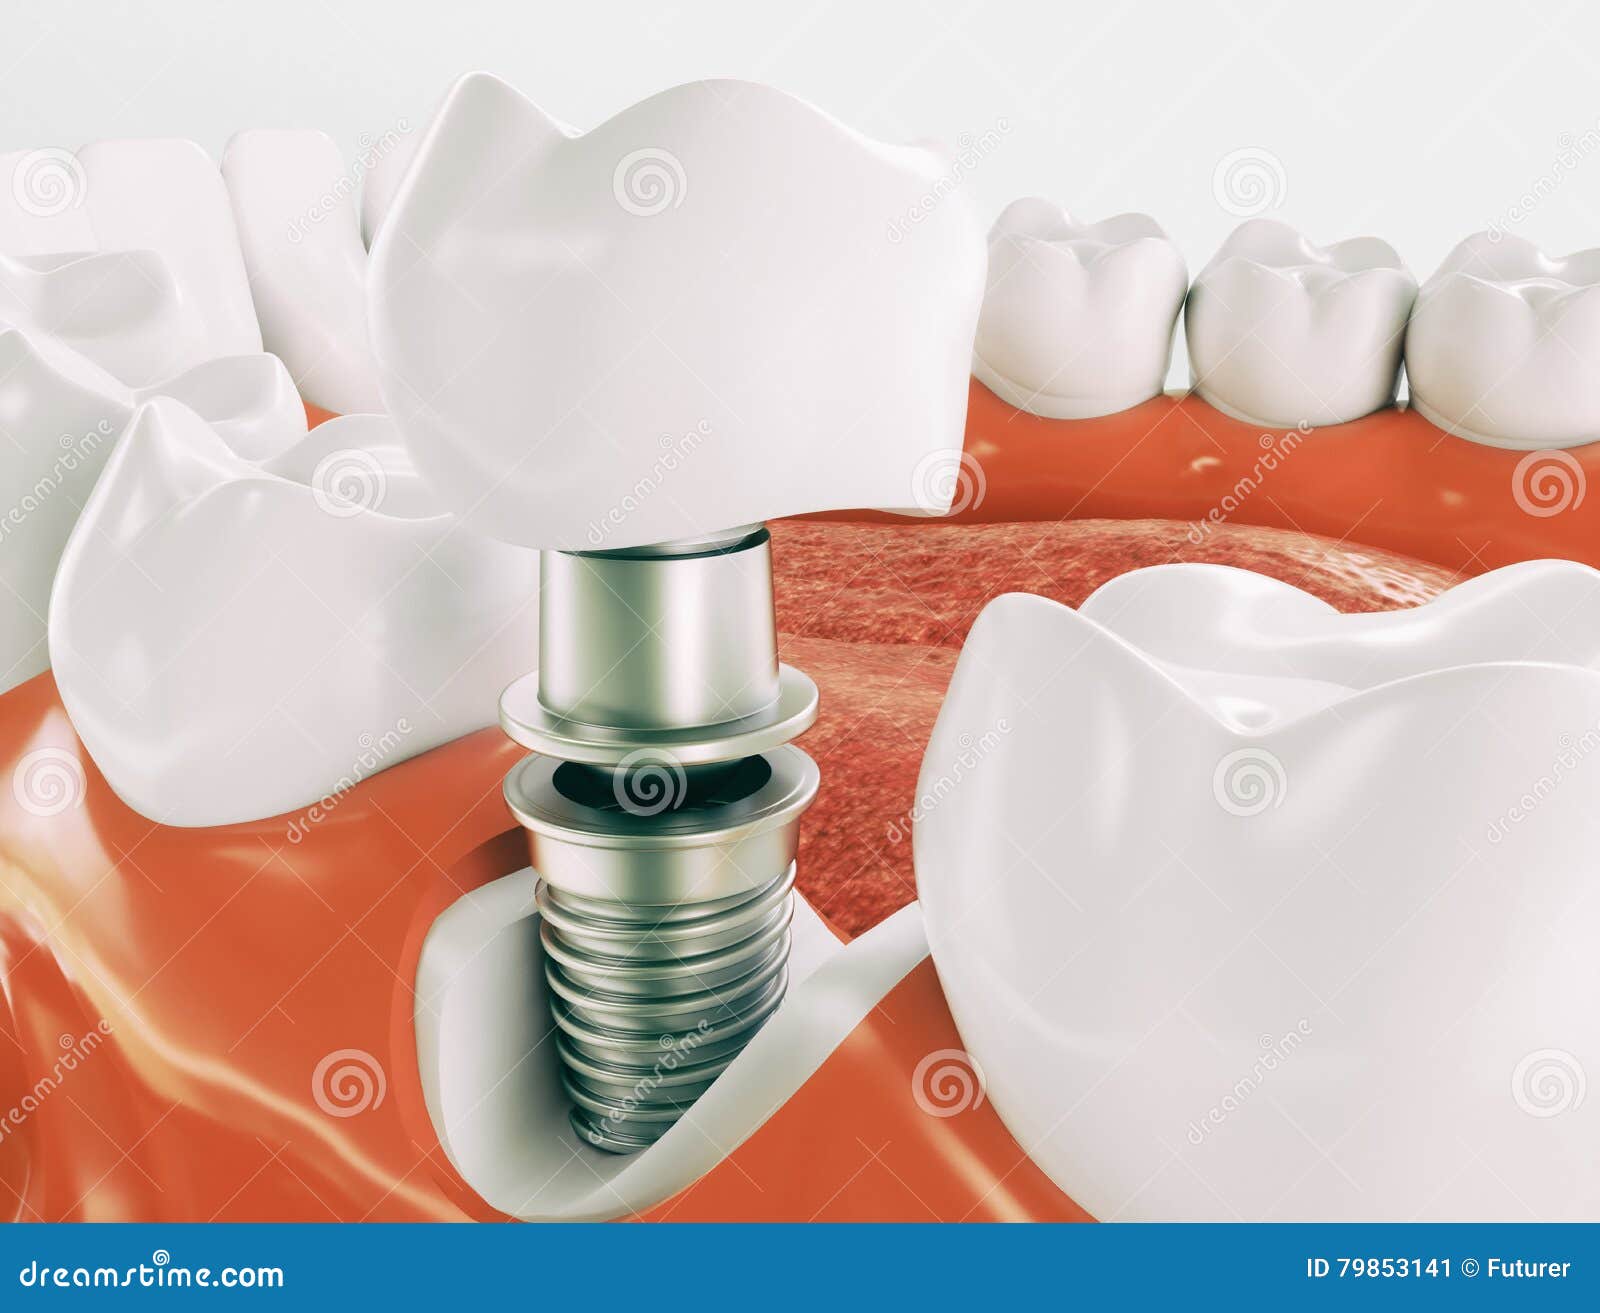 dental implant - series 2 of 3 - 3d rendering